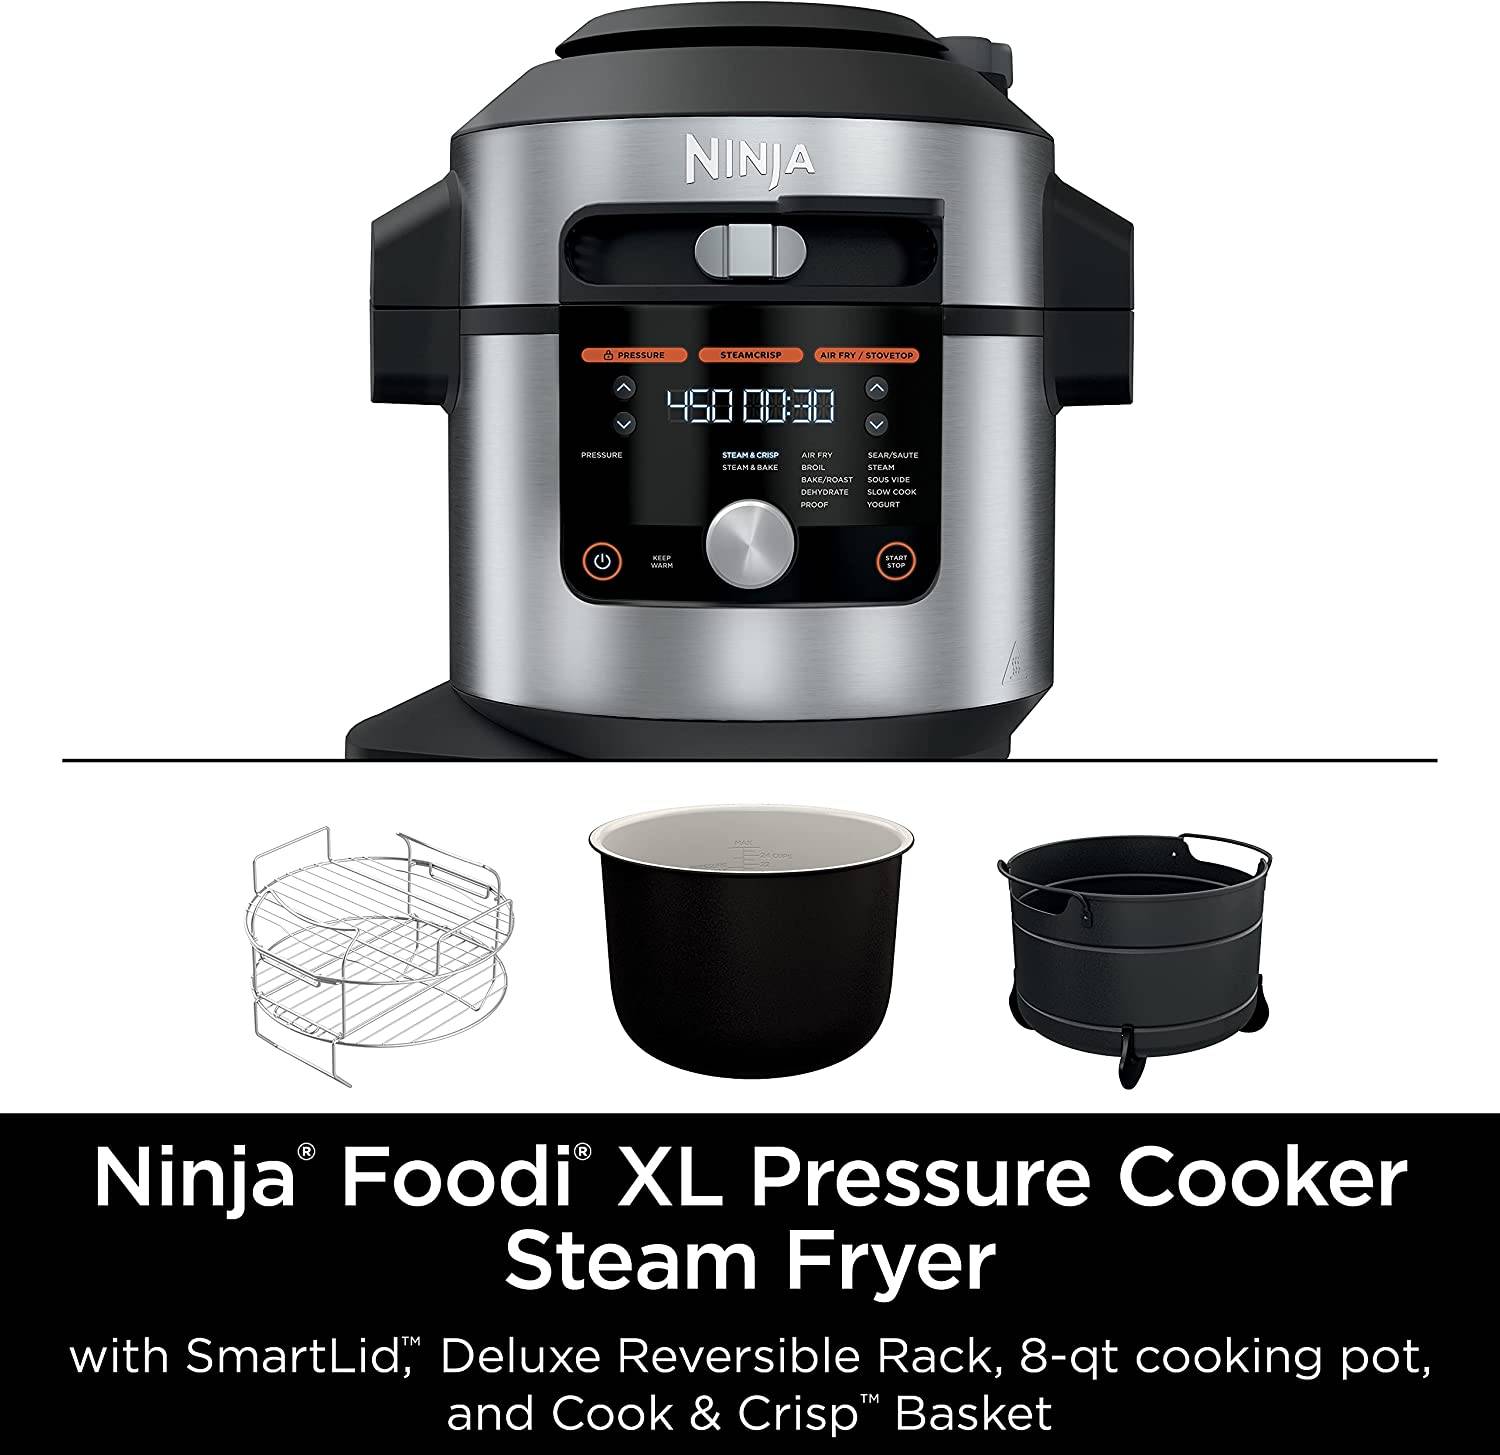 Ninja Foodi MAX 14-in-1 Multi-Cooker - Certified Refurbished